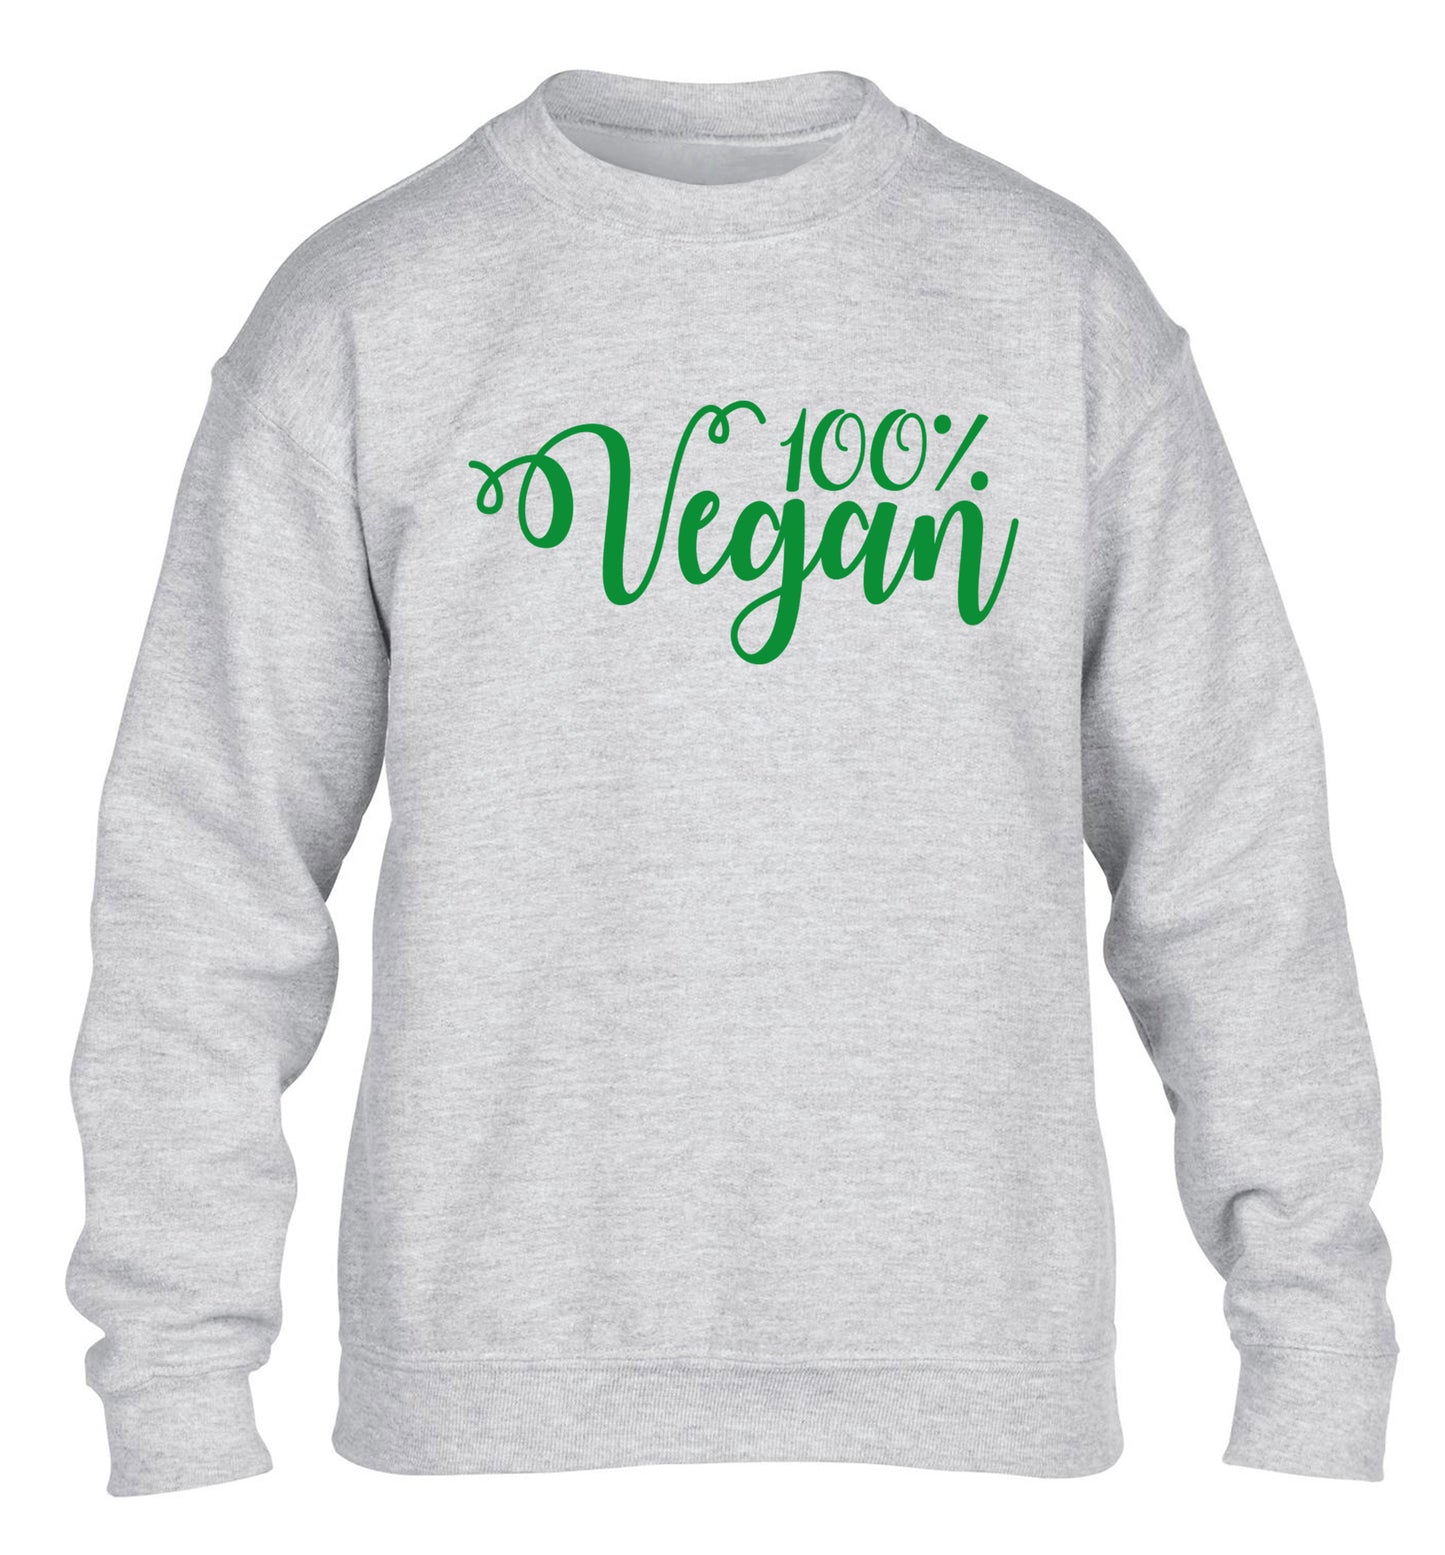 100% Vegan children's grey sweater 12-14 Years